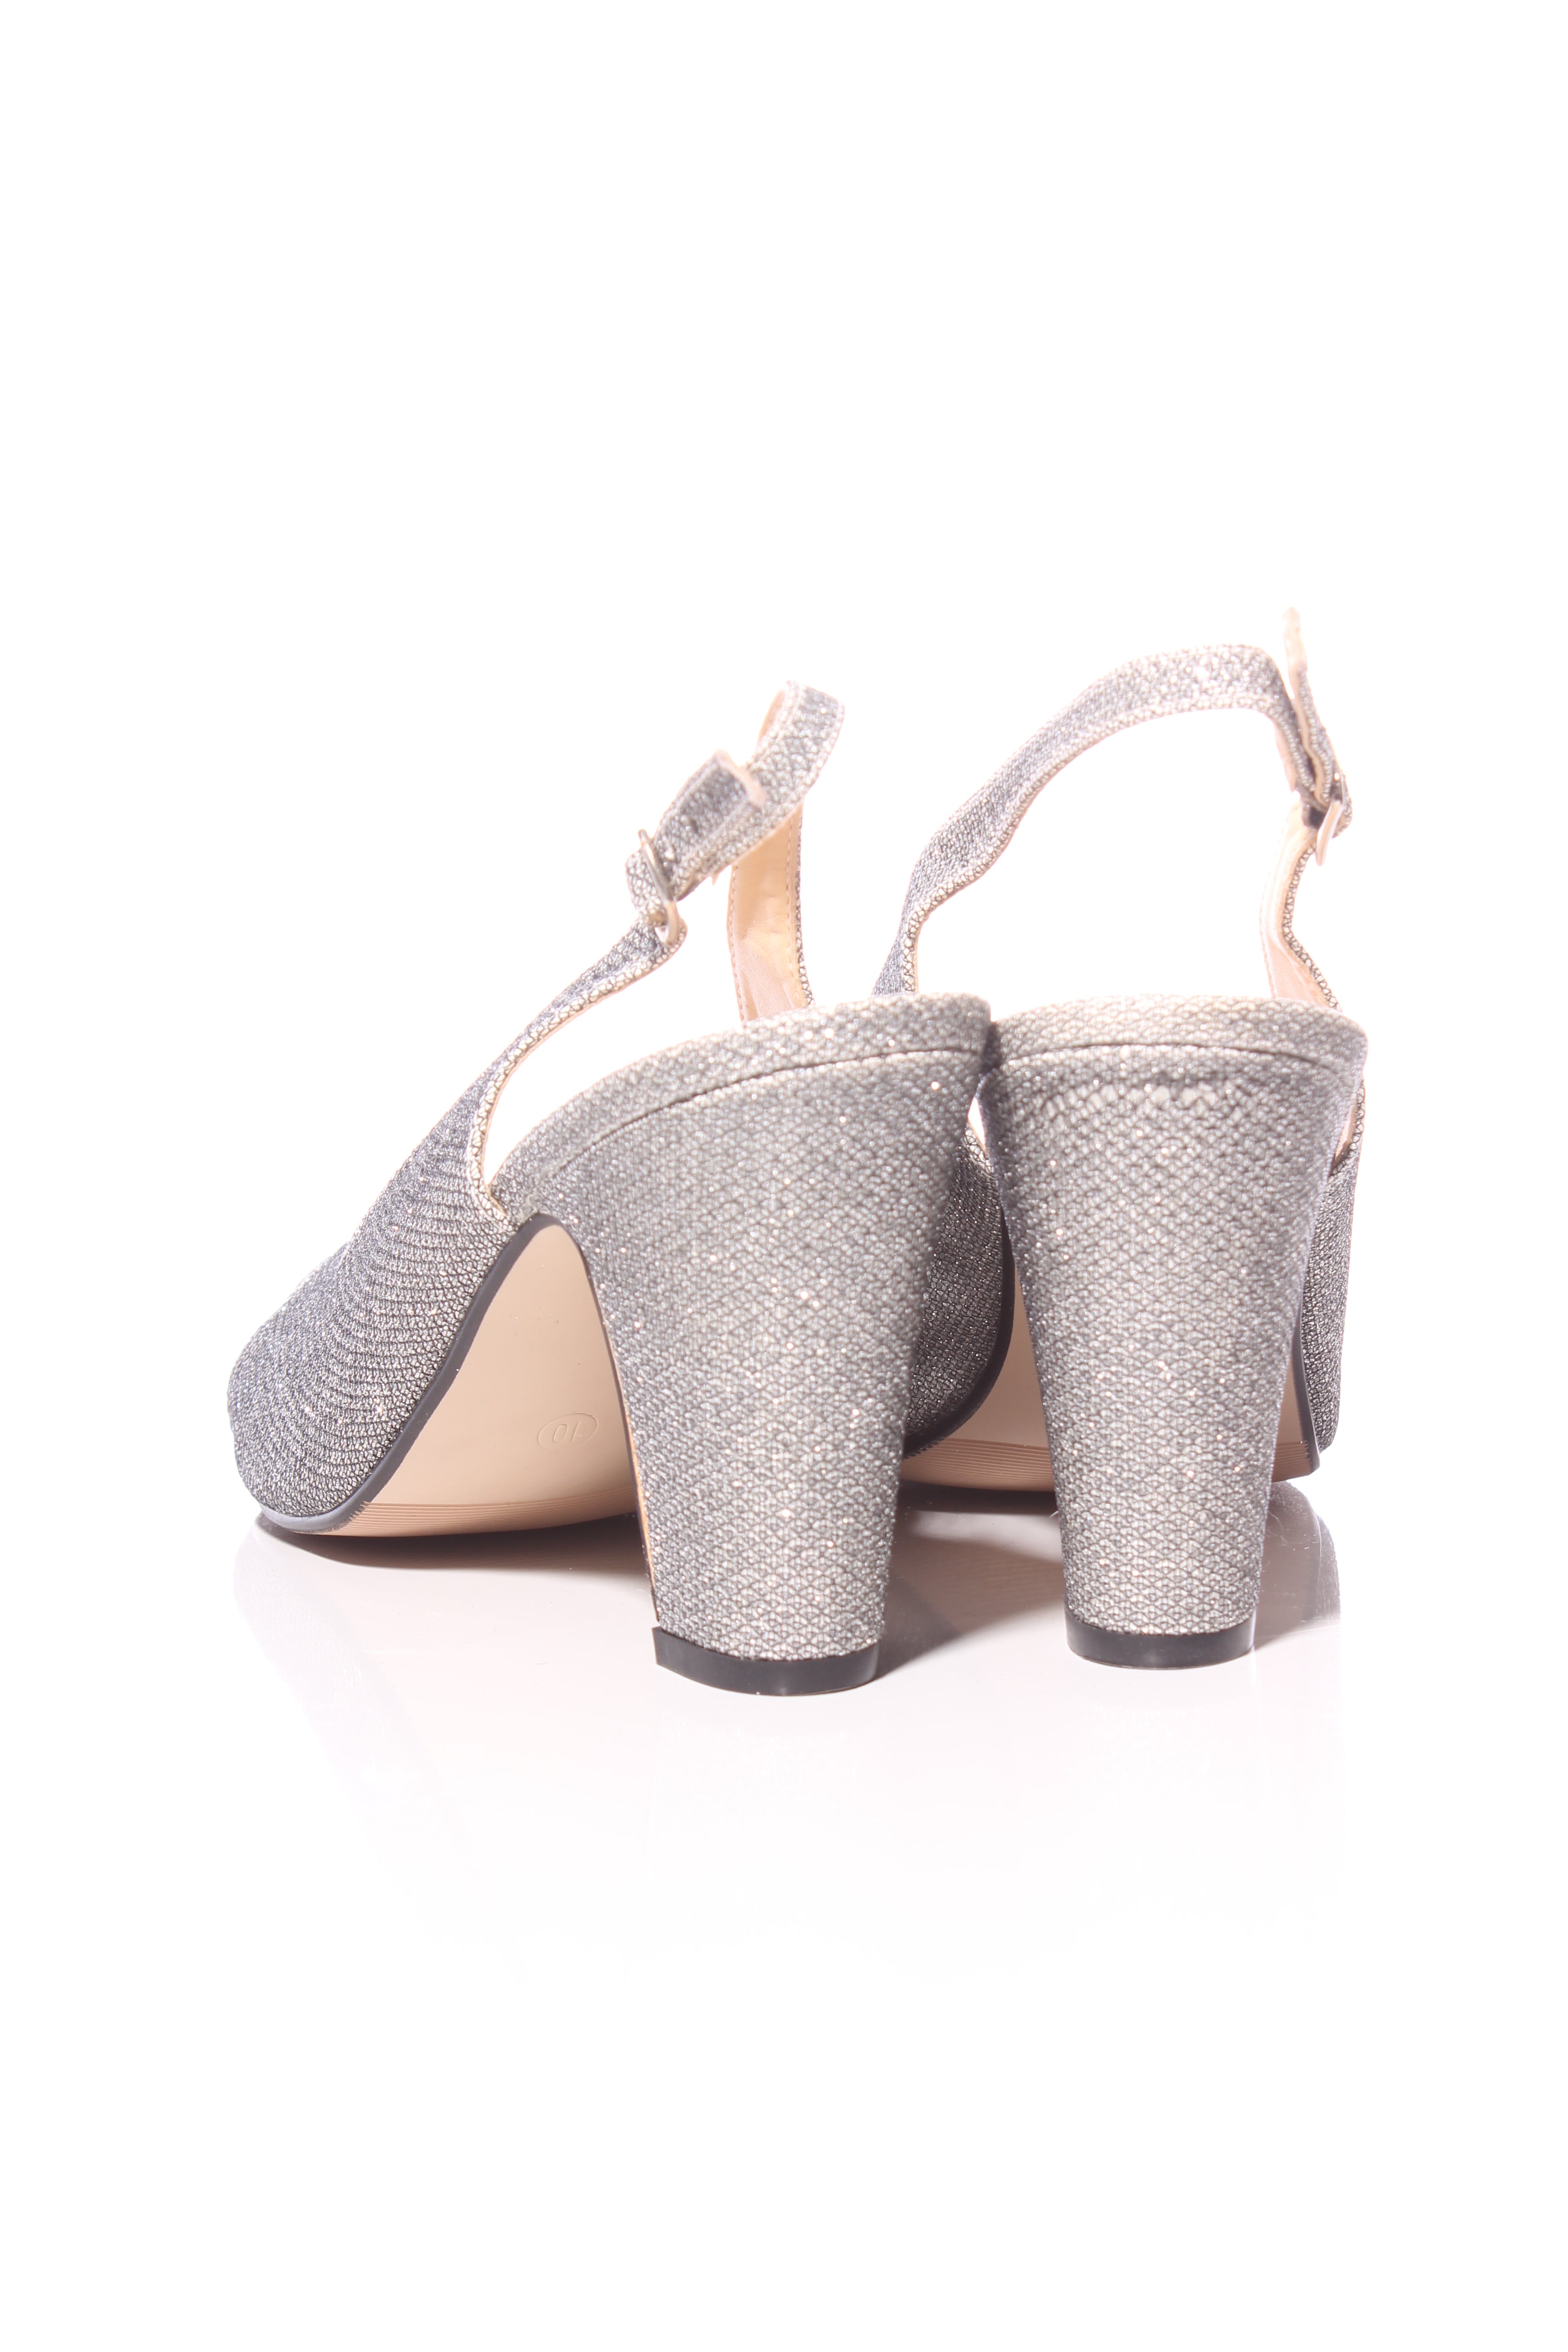 LATISHA SILVER High Heels | Buy Women's HEELS Online | Novo Shoes NZ